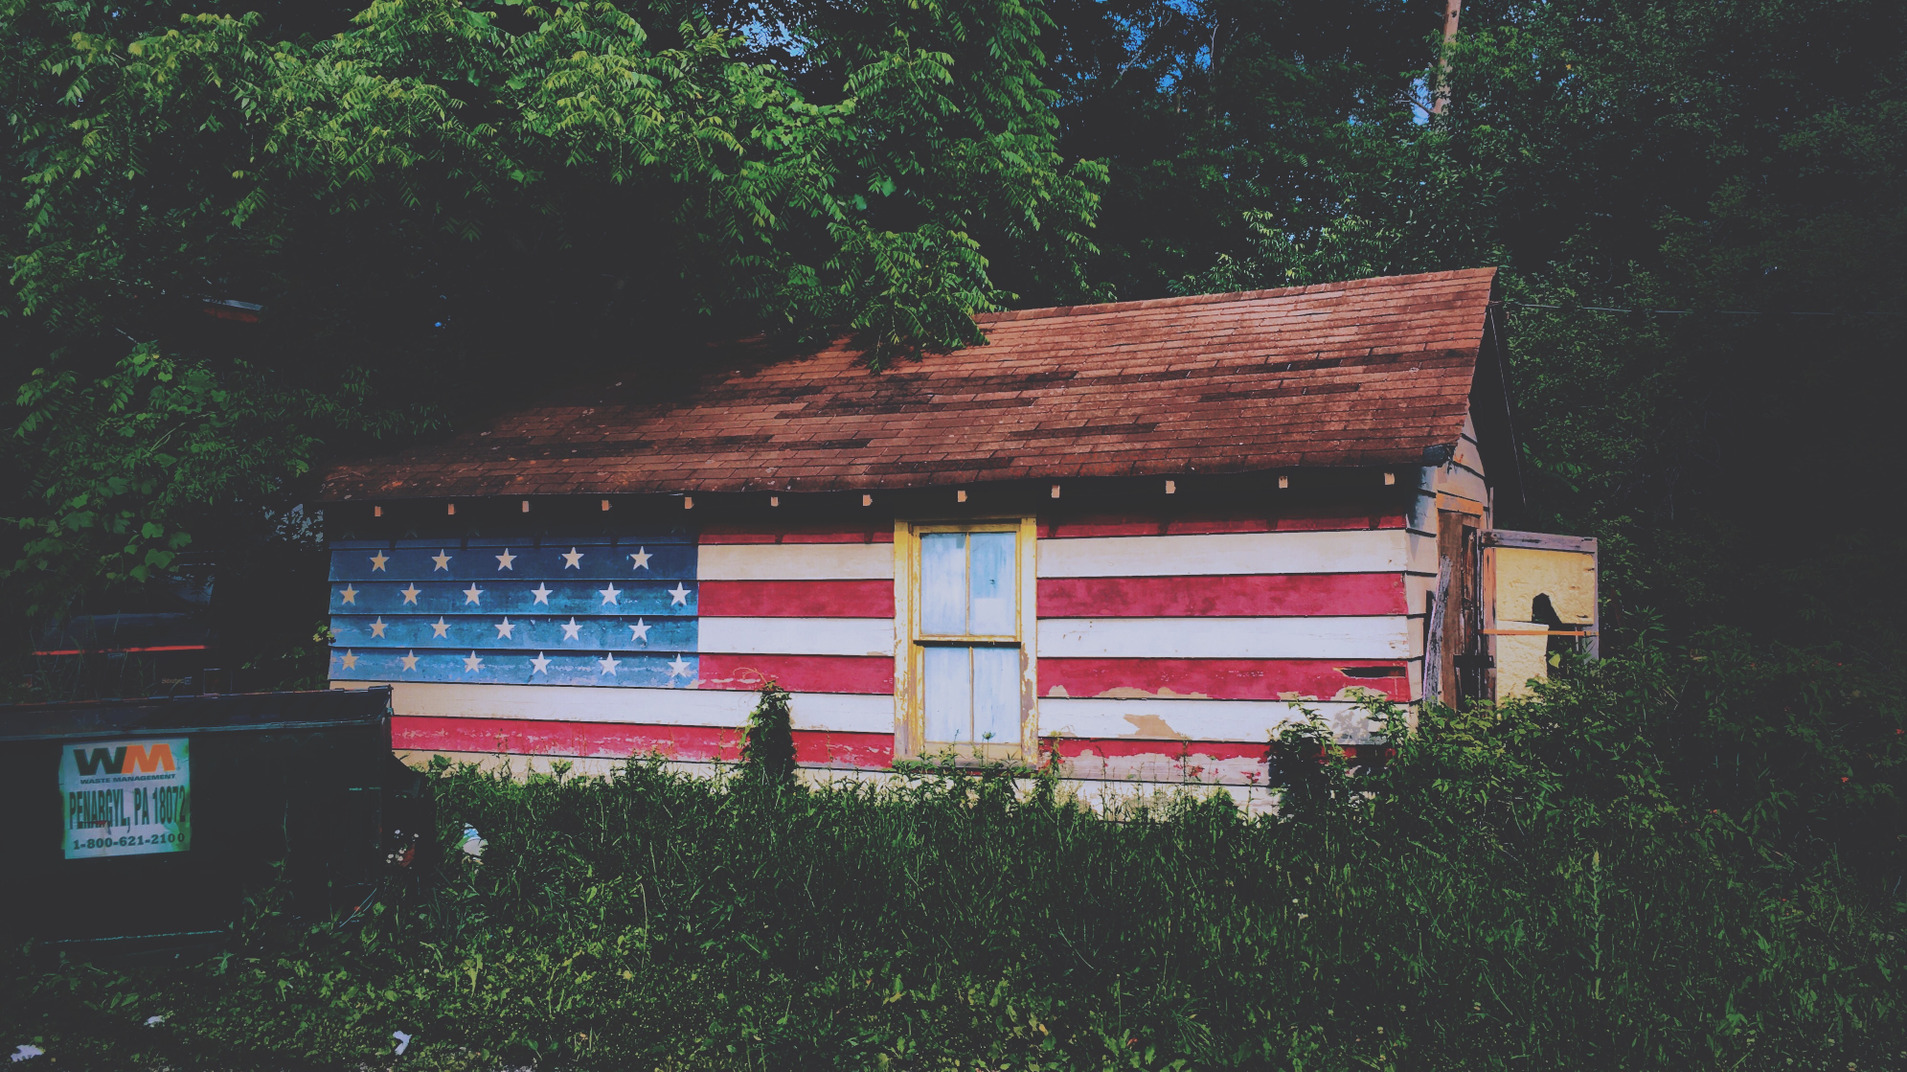 Casa dipinta come una bandiera americana